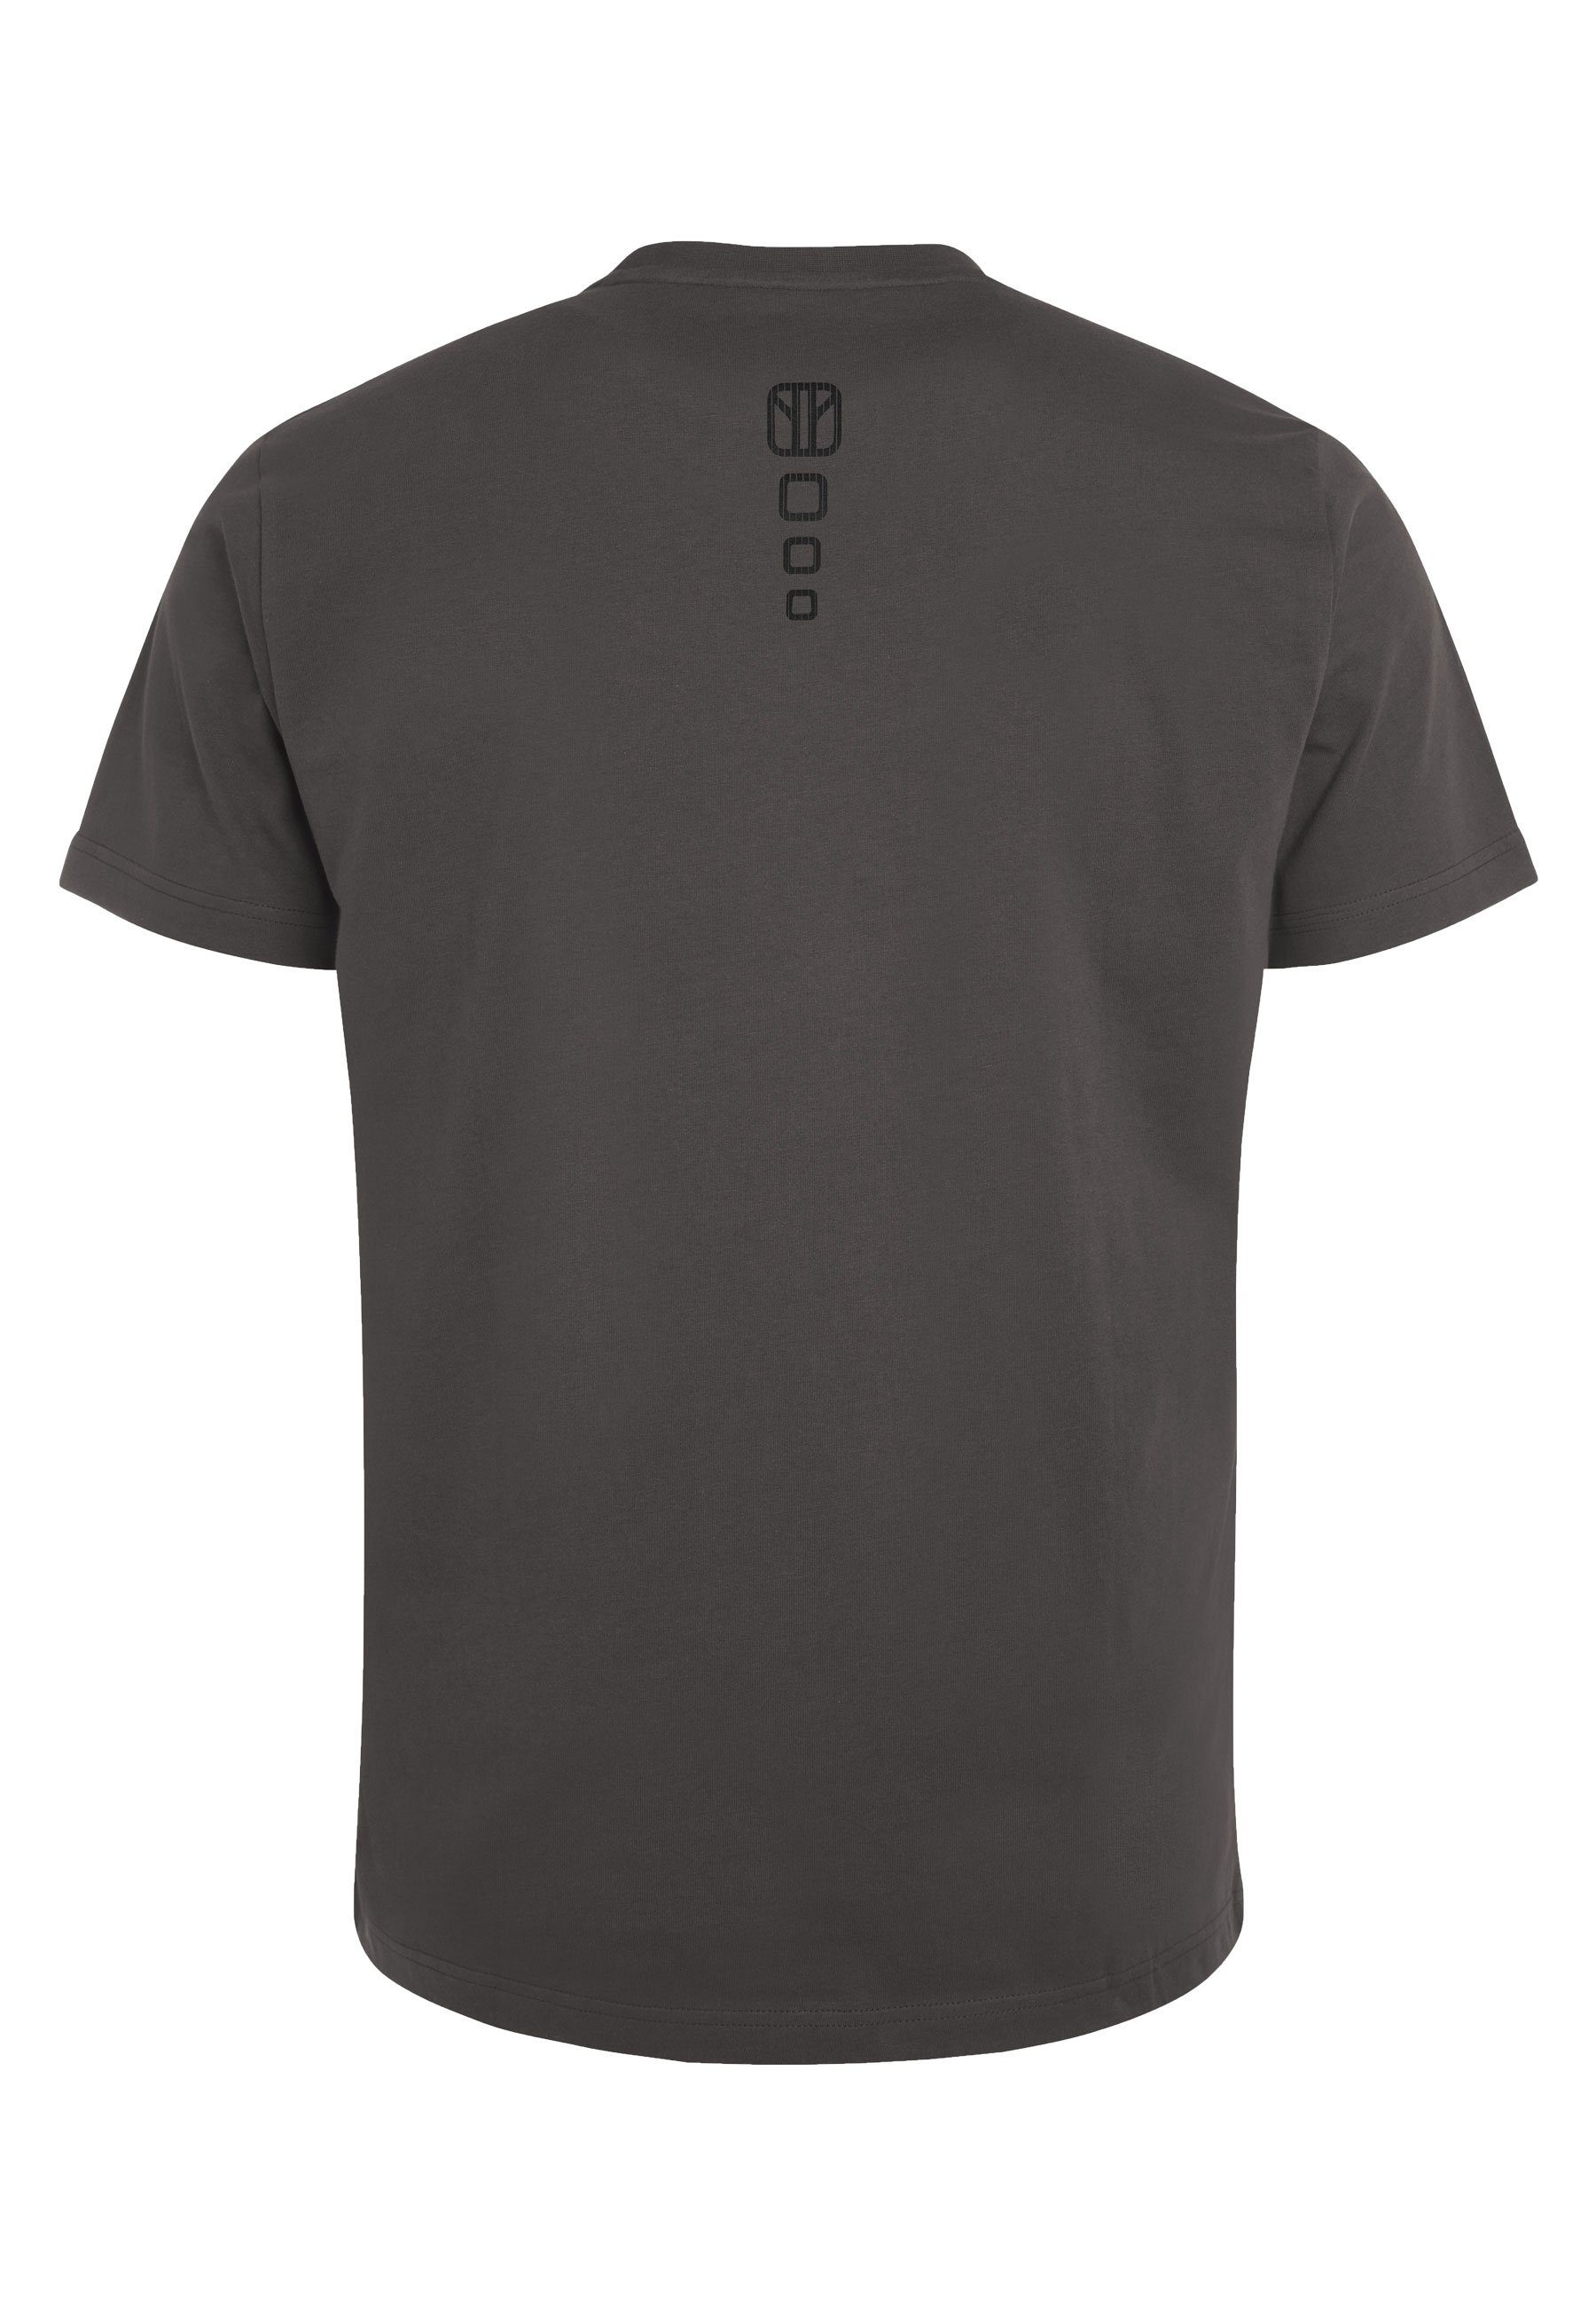 Elkline T-Shirt Schnitt sportlich gerader Unifarben grey Drive Basic Cool